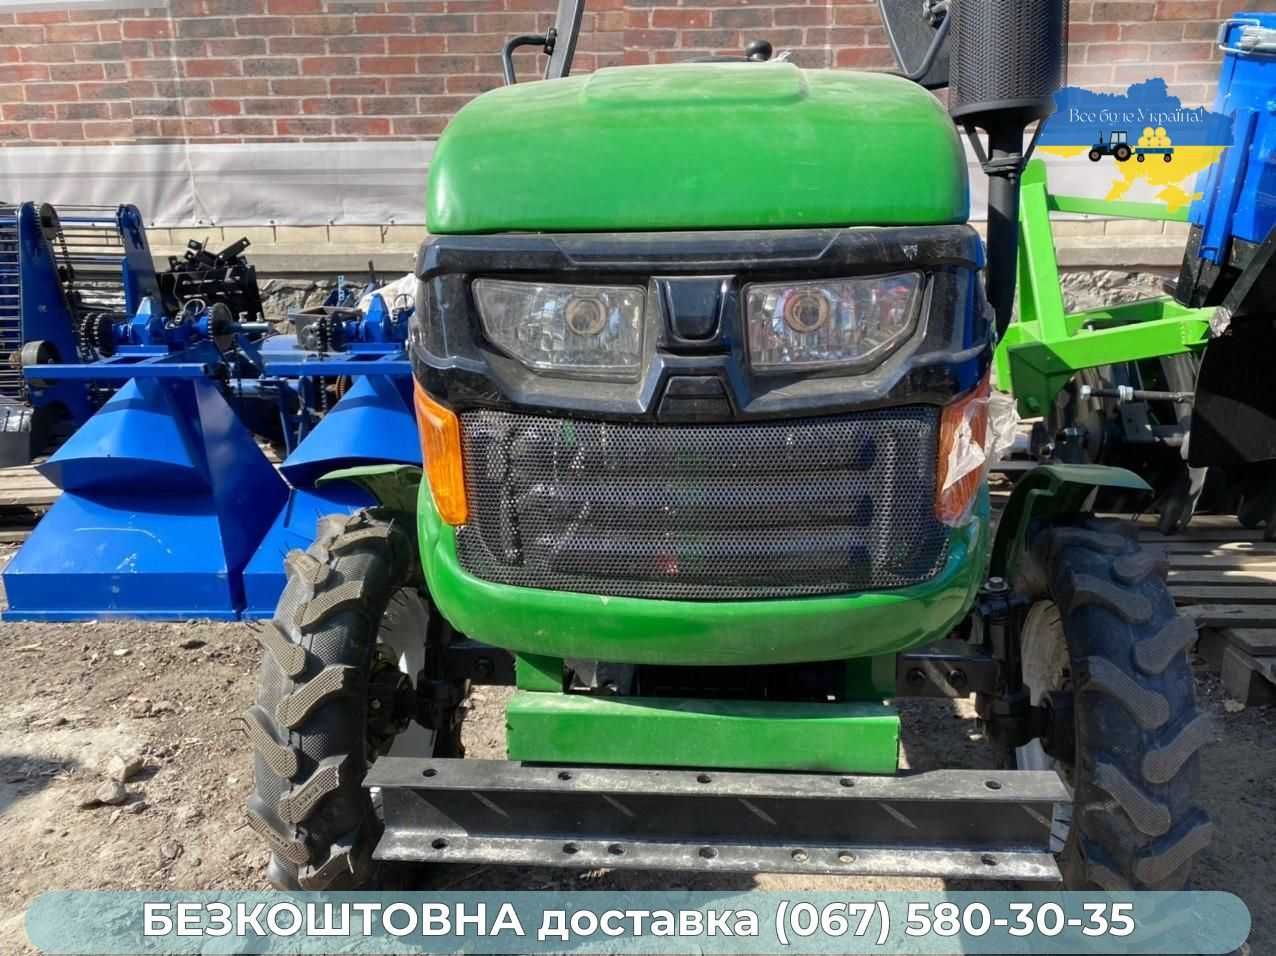 Трактор Кентавр ДВ 160 без предоплаты Бесплатная доставка Кредит Булат